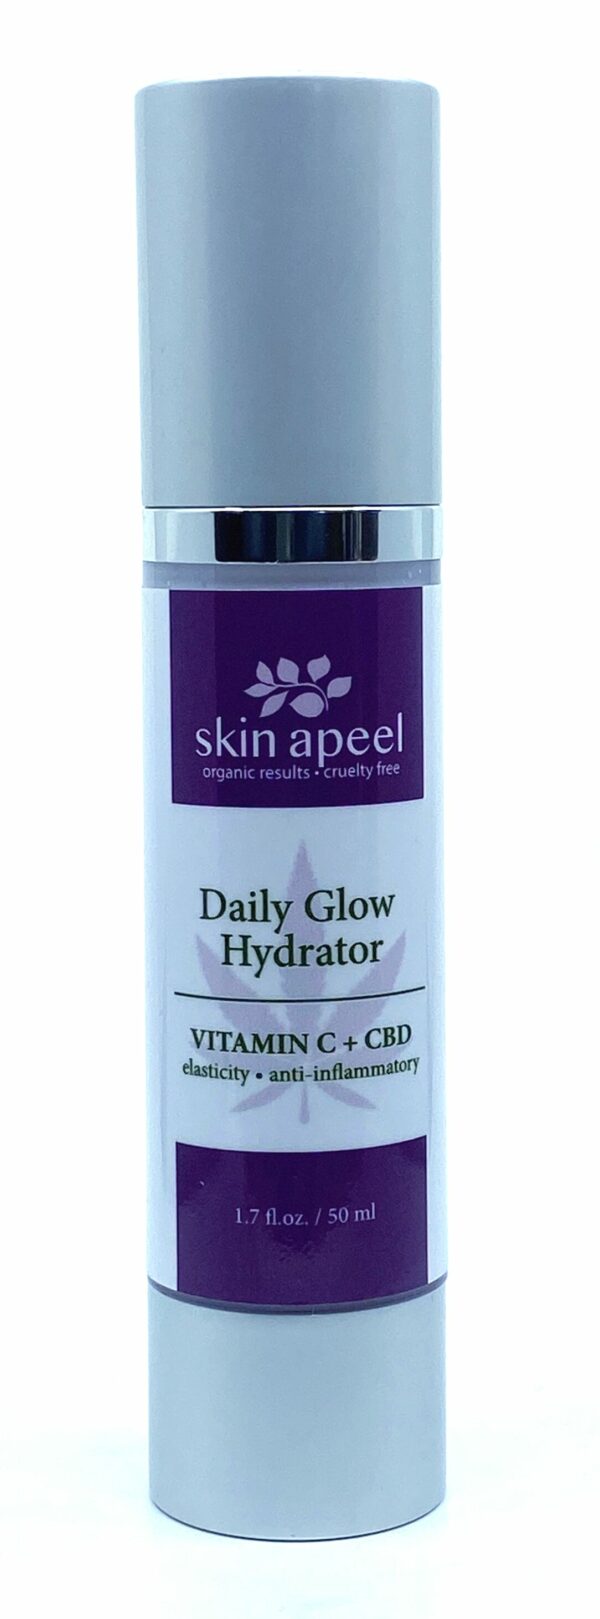 Daily Glow Hydrator by Skin Apeel